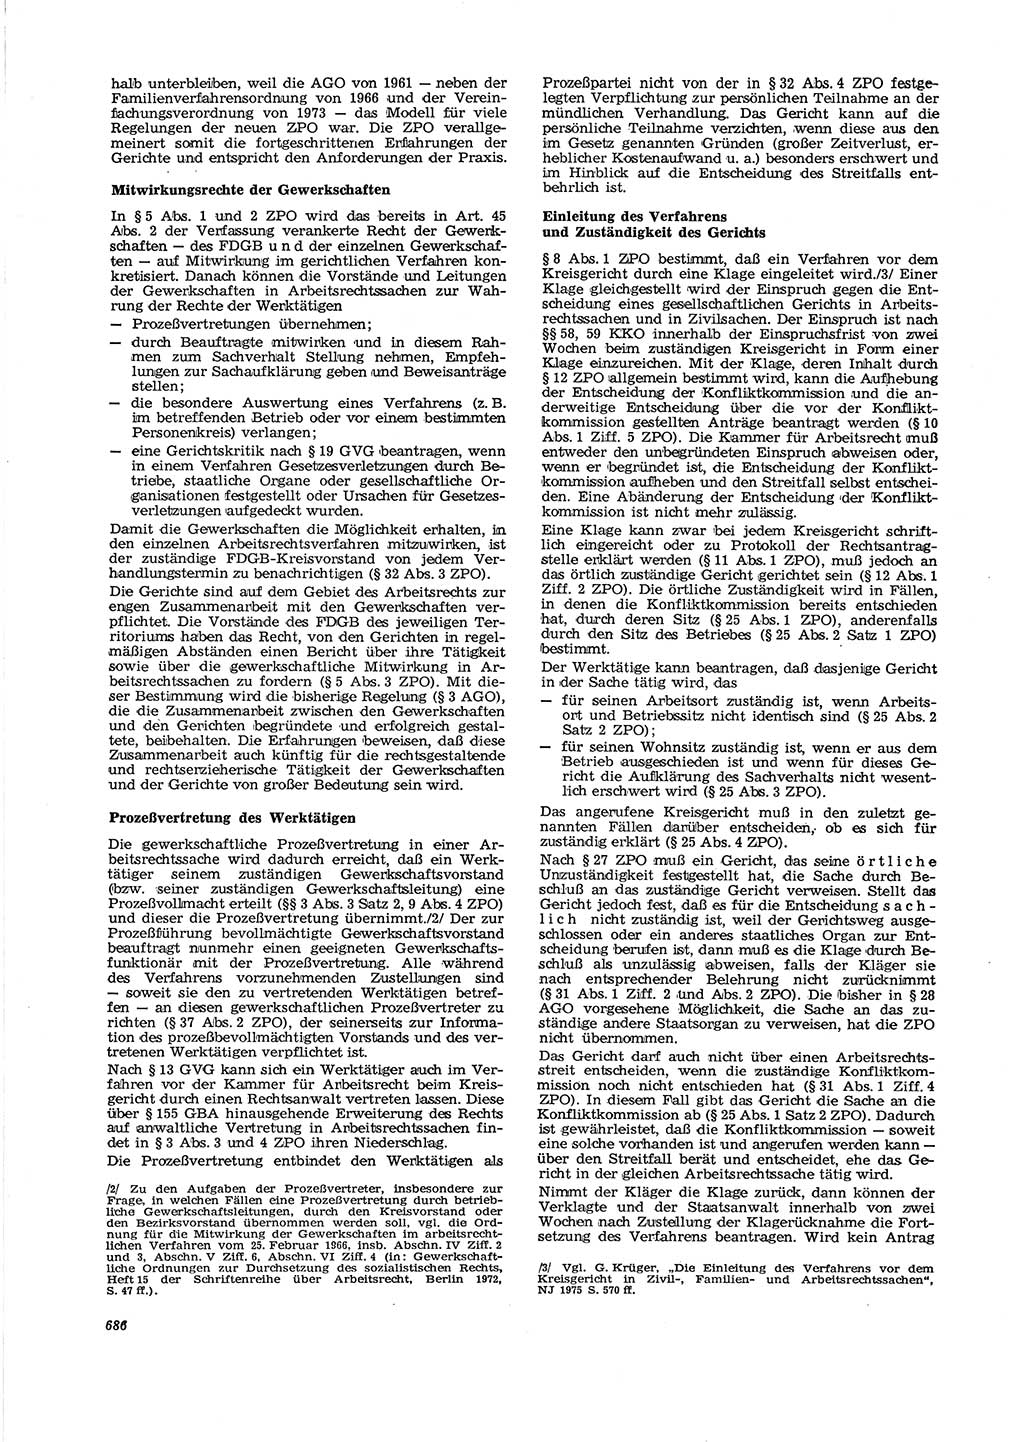 Neue Justiz (NJ), Zeitschrift für Recht und Rechtswissenschaft [Deutsche Demokratische Republik (DDR)], 29. Jahrgang 1975, Seite 686 (NJ DDR 1975, S. 686)